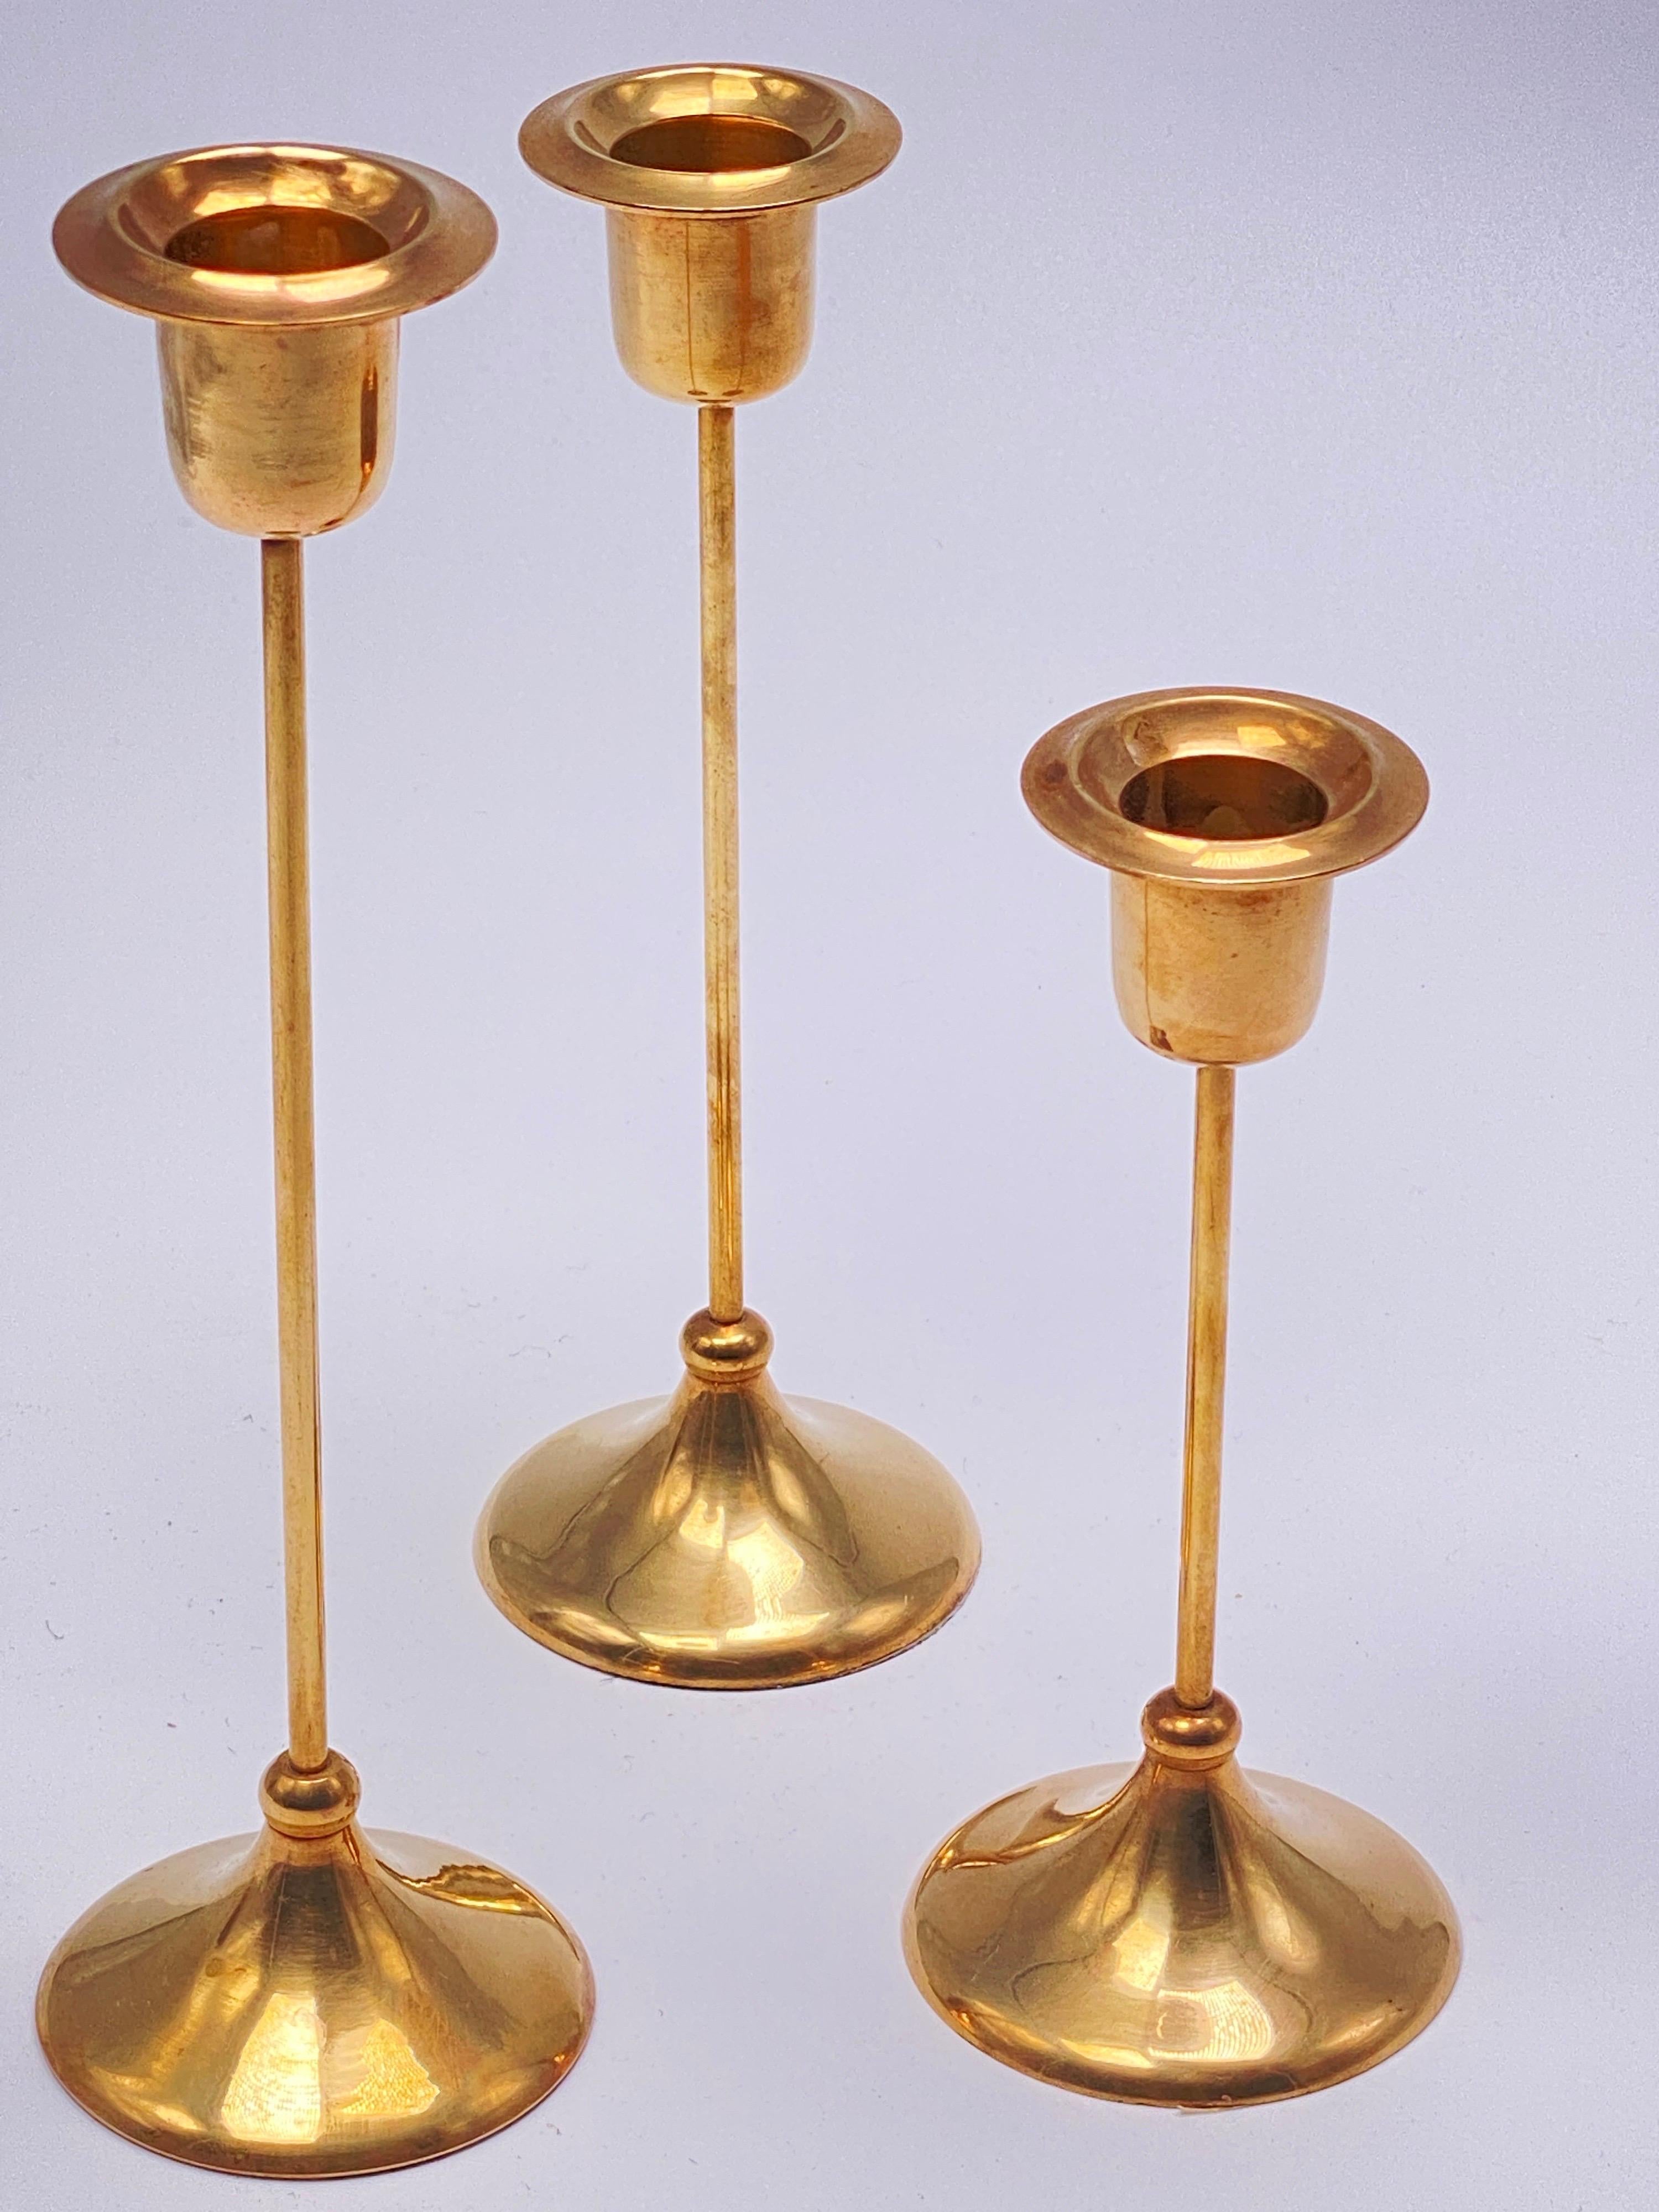 cet ensemble est composé de trois chandeliers, en laiton. il a été fabriqué en suède vers 1960.
La couleur est dorée.